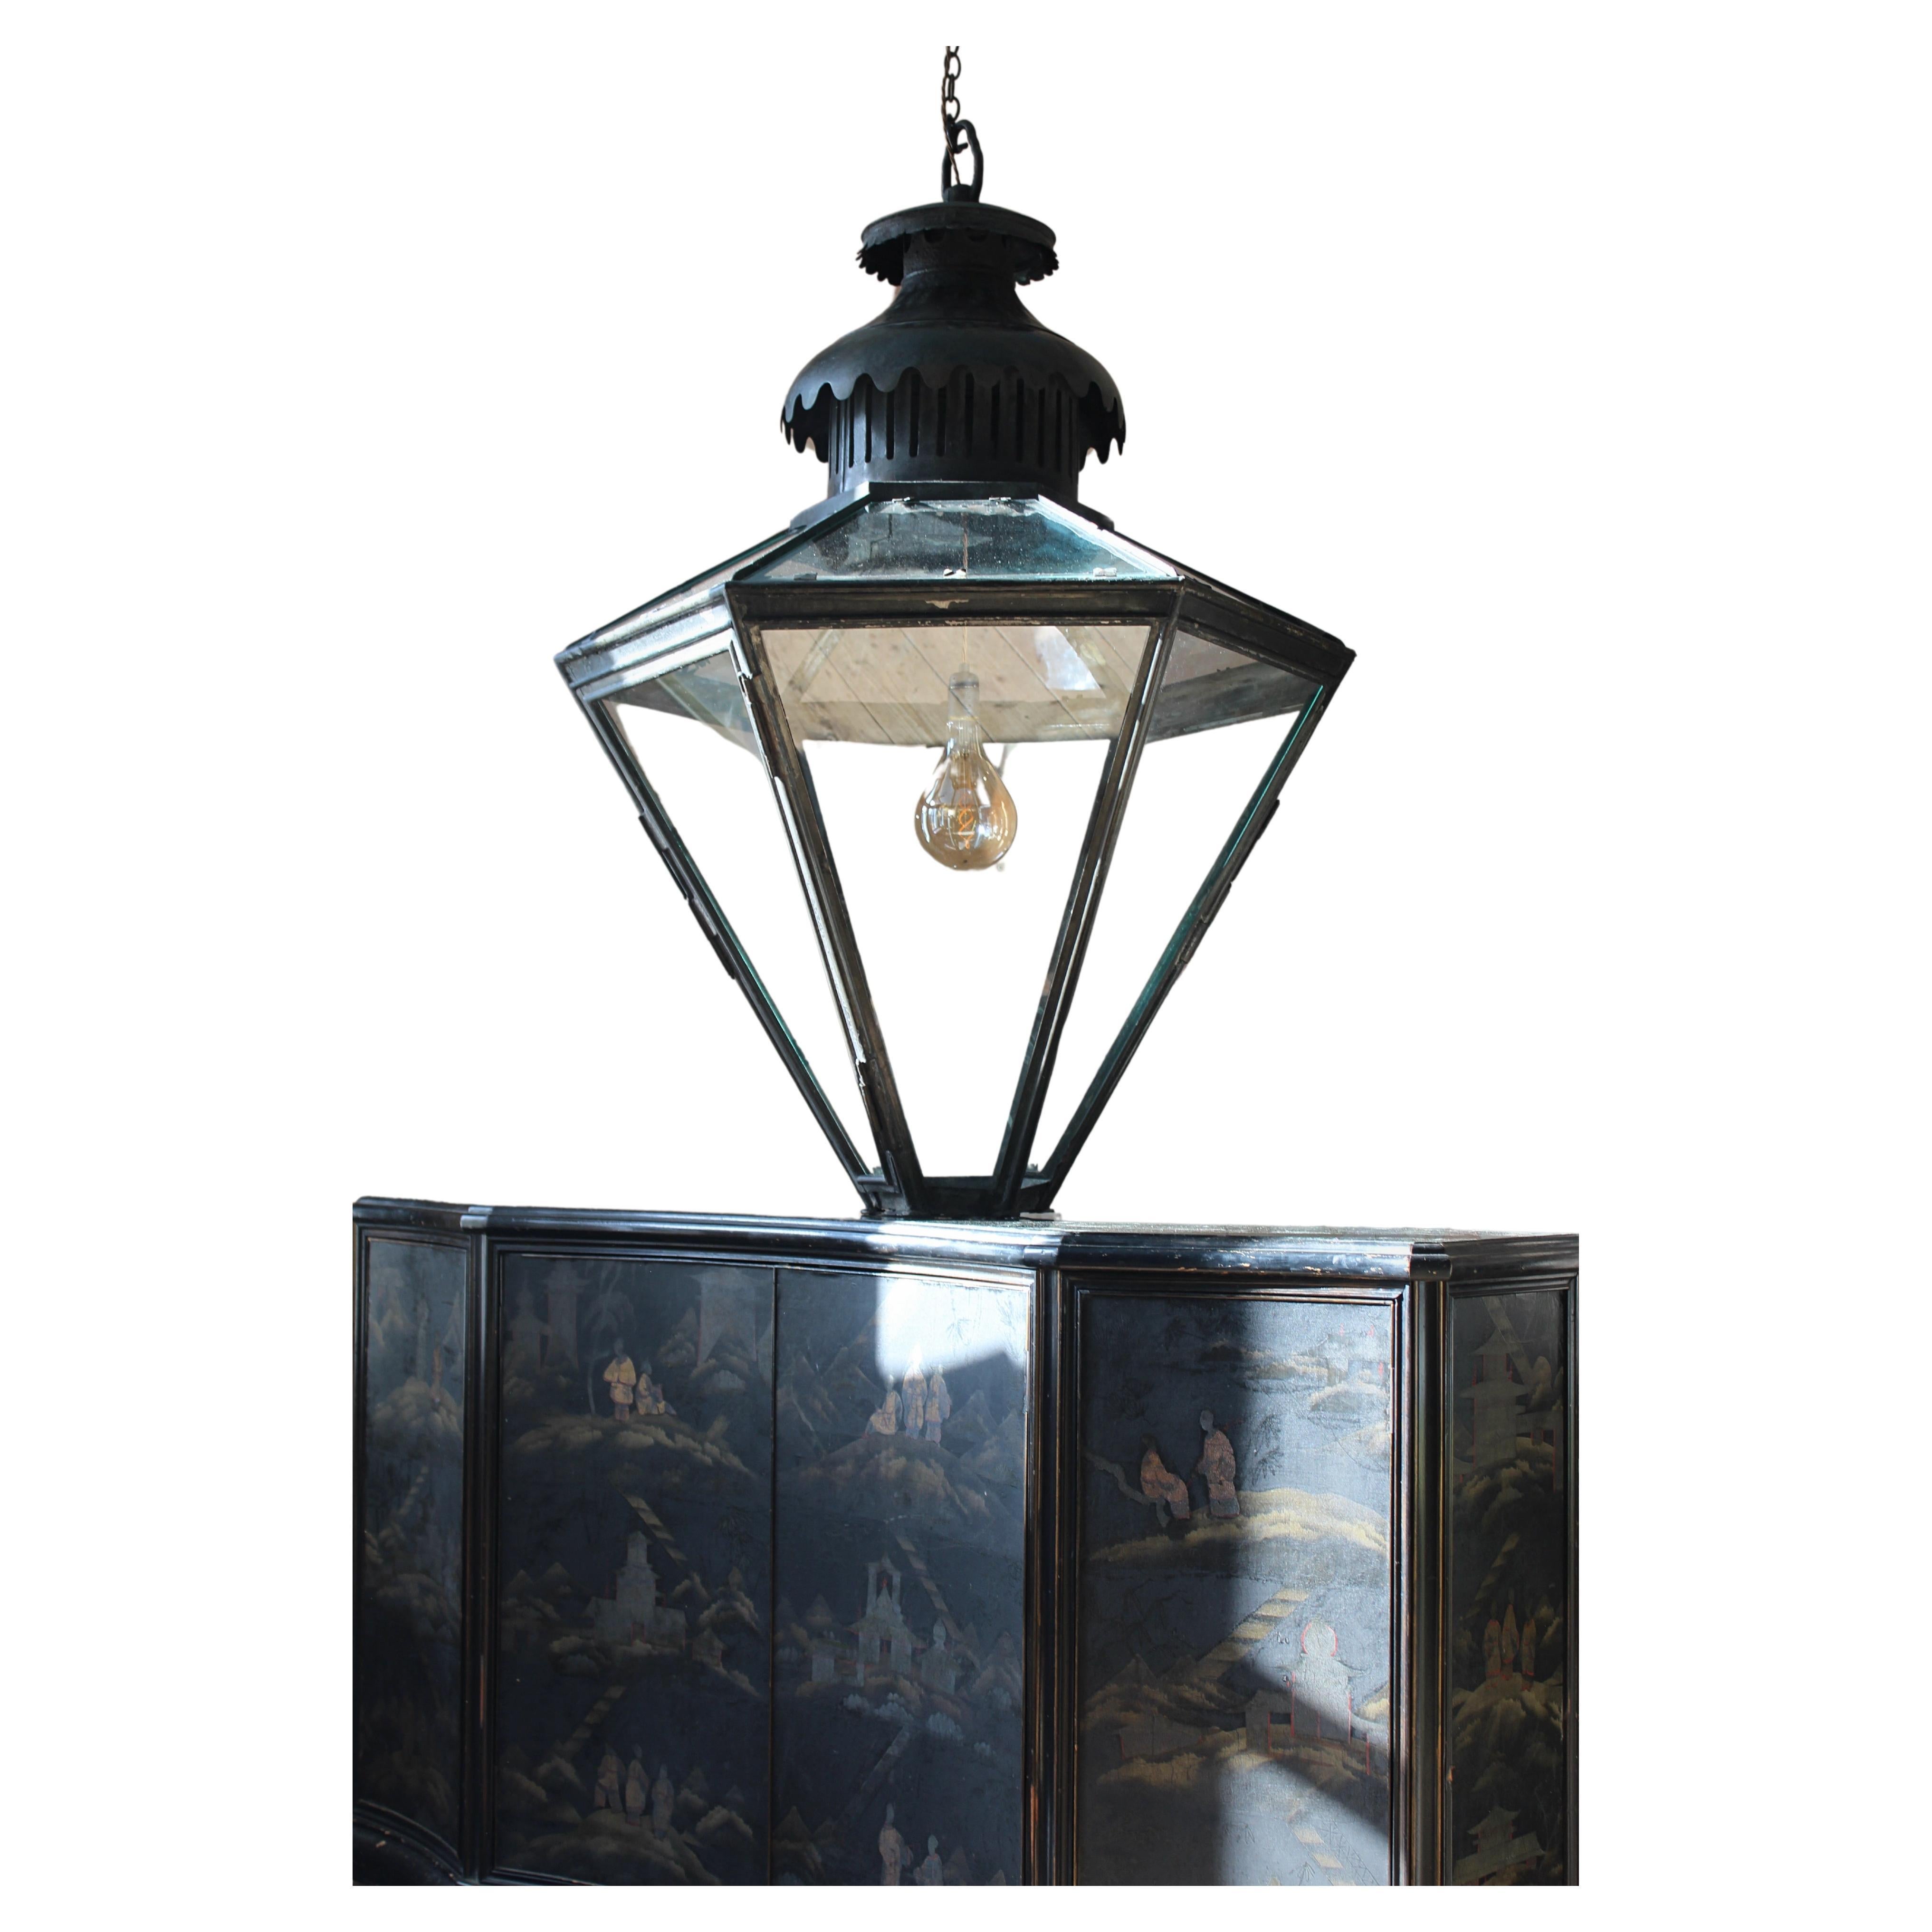 19th century Monumental Huge Copper Glazed Lantern Light Chandelier Verdigris 